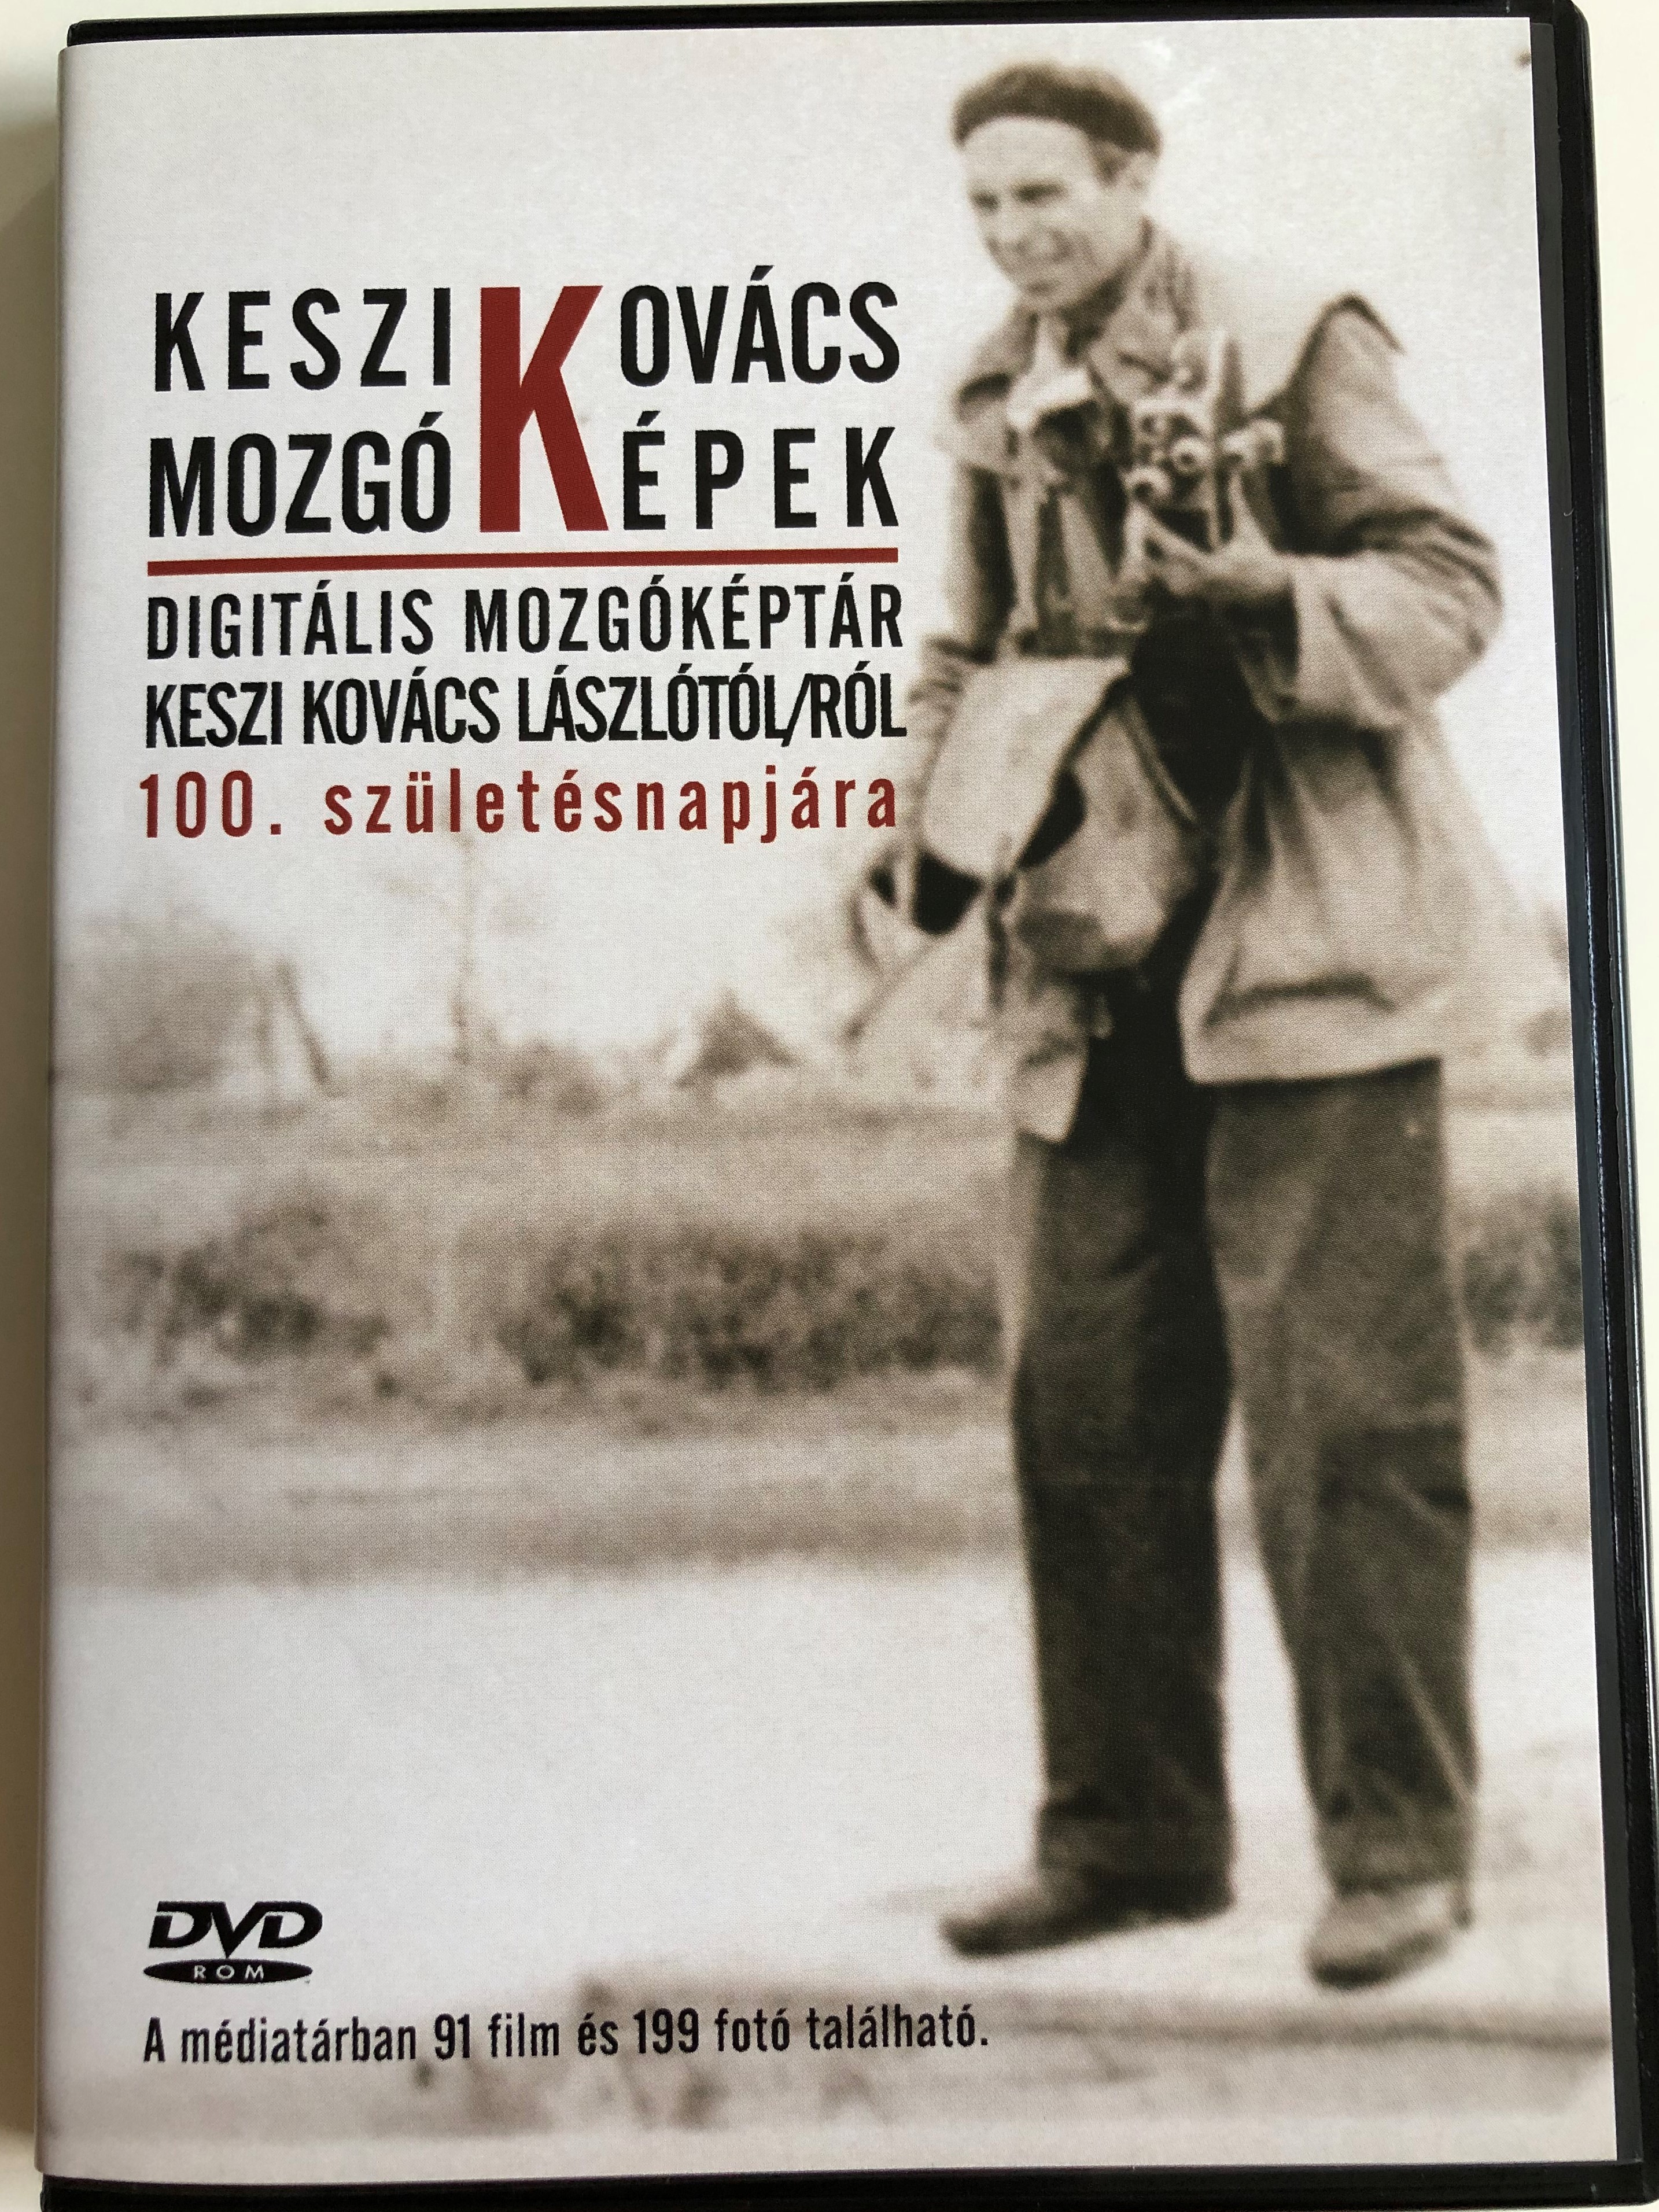 keszi-kov-cs-mozg-k-pek-dvd-2008-digit-lis-mozg-k-pt-r-keszi-kov-cs-l-szl-t-lr-l-100.-sz-let-snapj-ra-91-films-and-199-photos-from-keszi-kov-cs-l-szl-1-.jpg